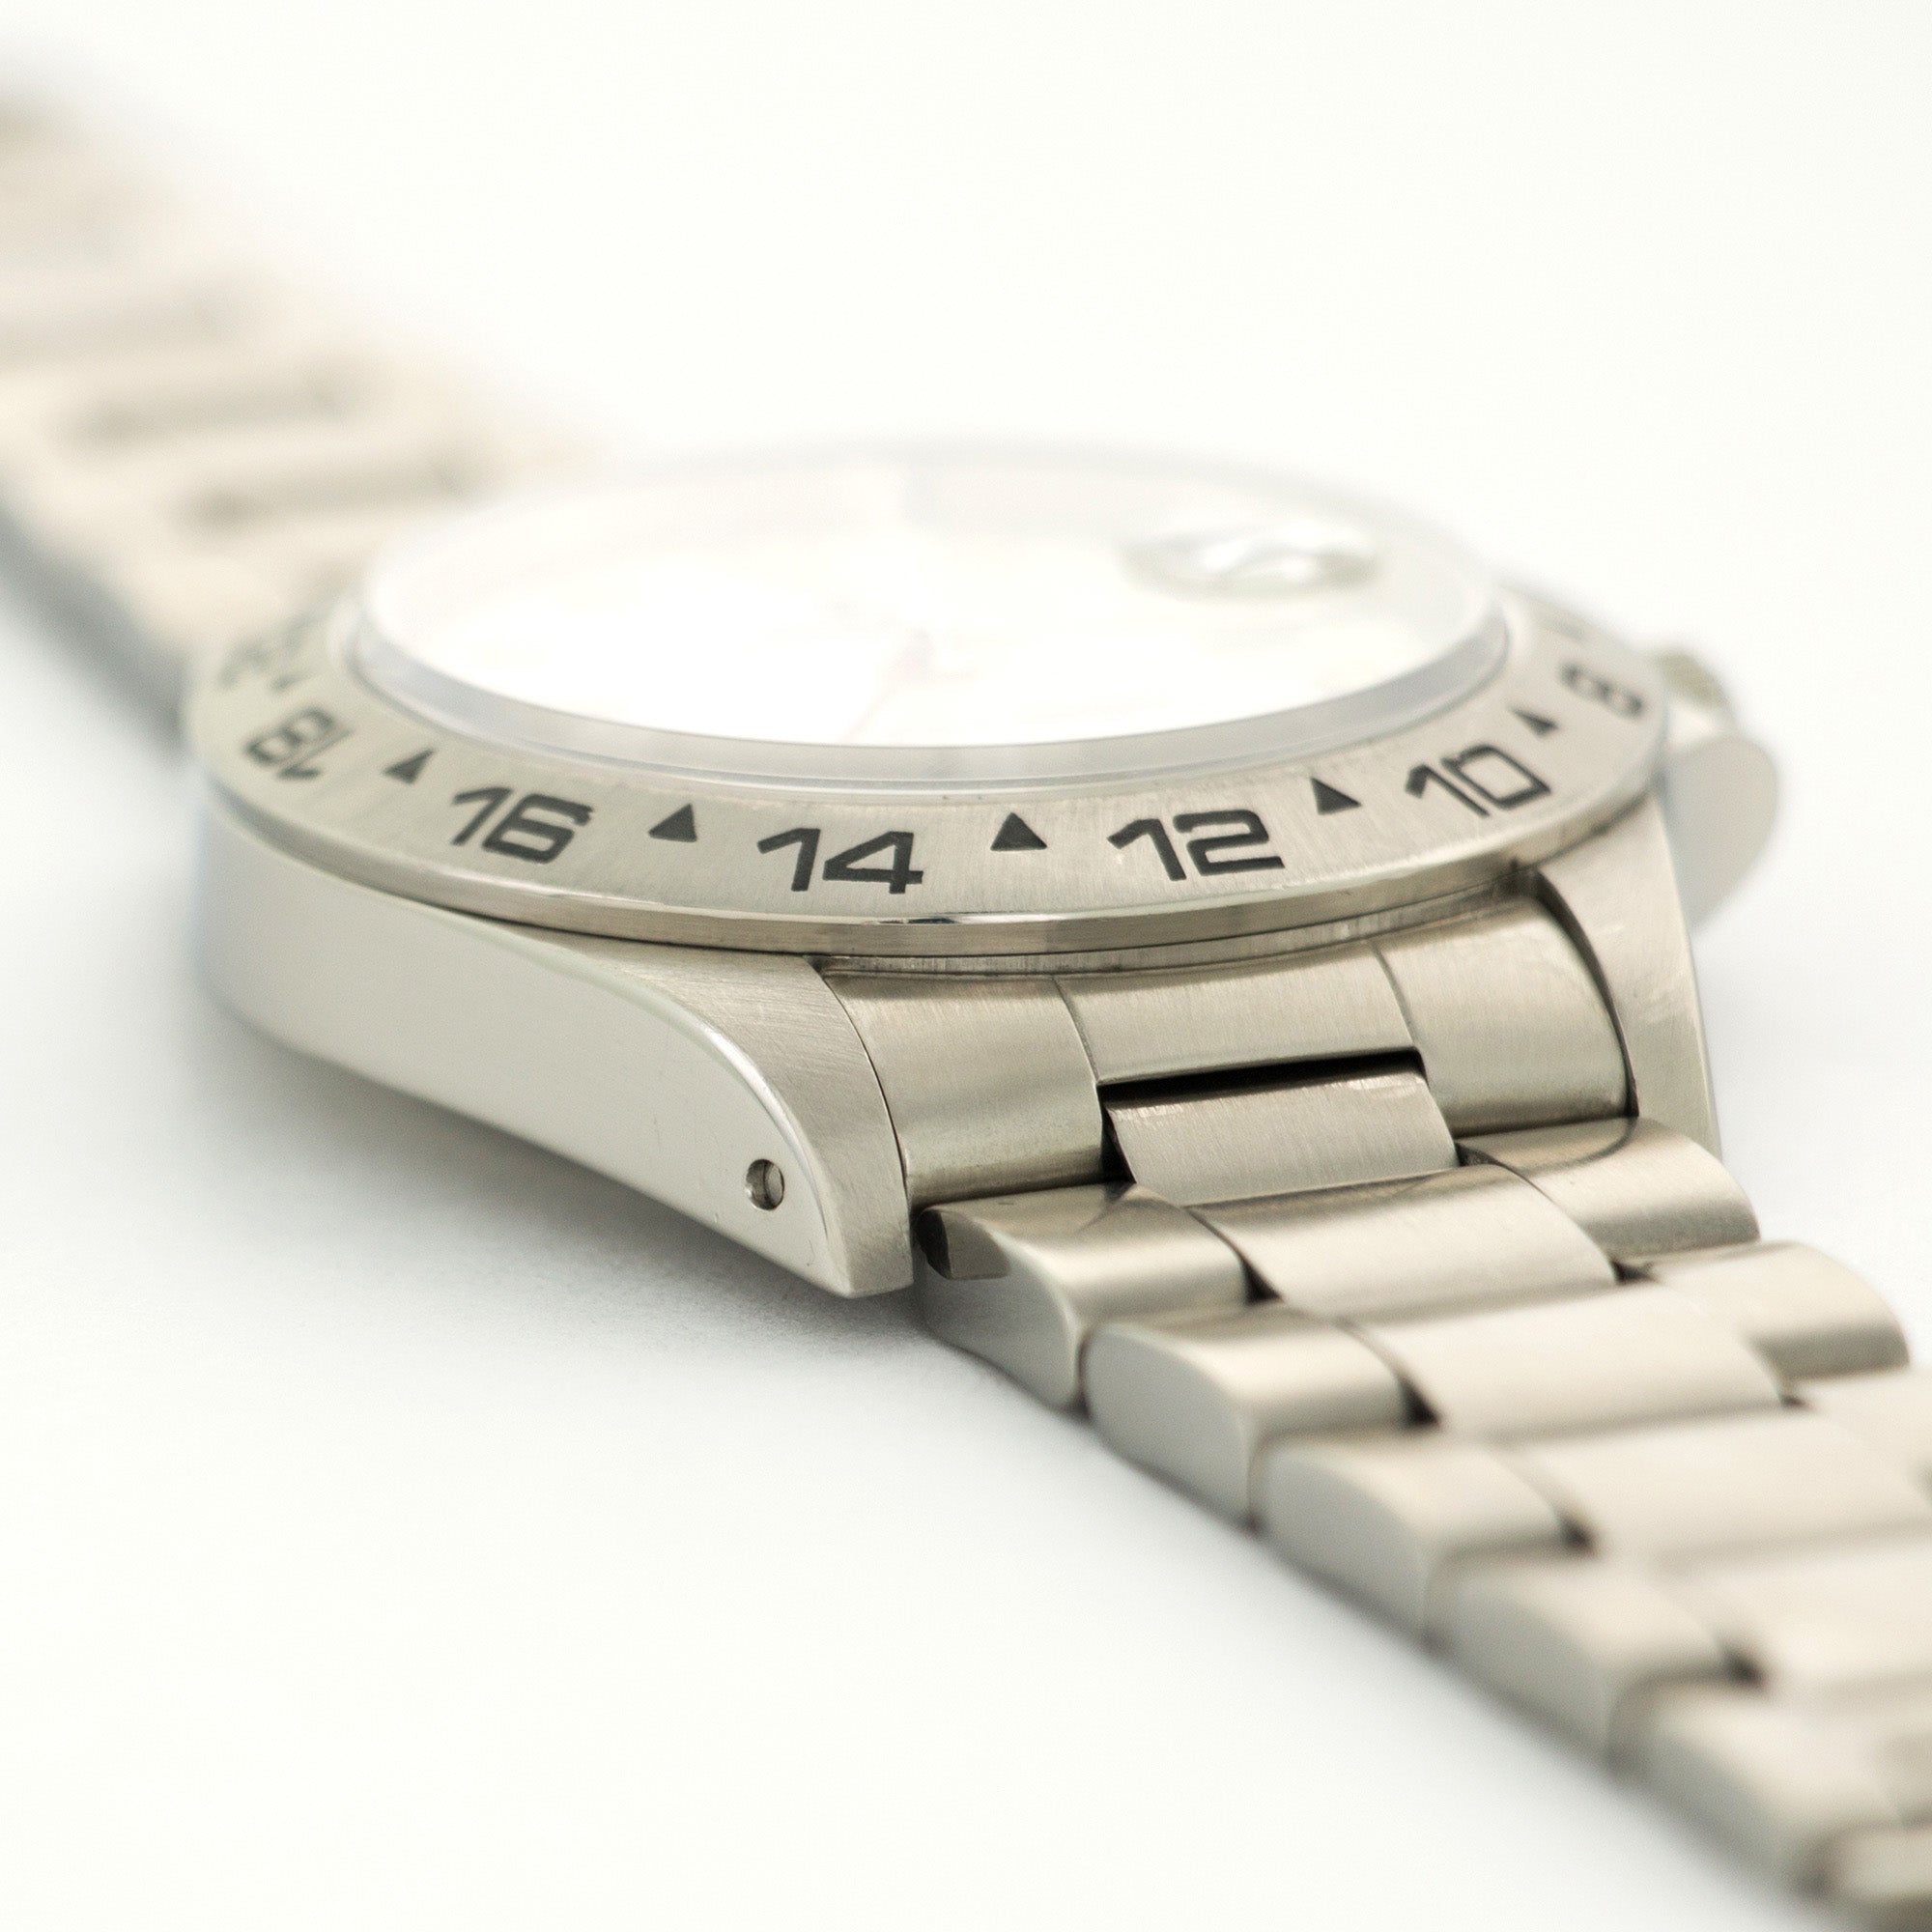 Rolex - Rolex Steel Explorer Cream Dial Watch Ref. 16550 - The Keystone Watches